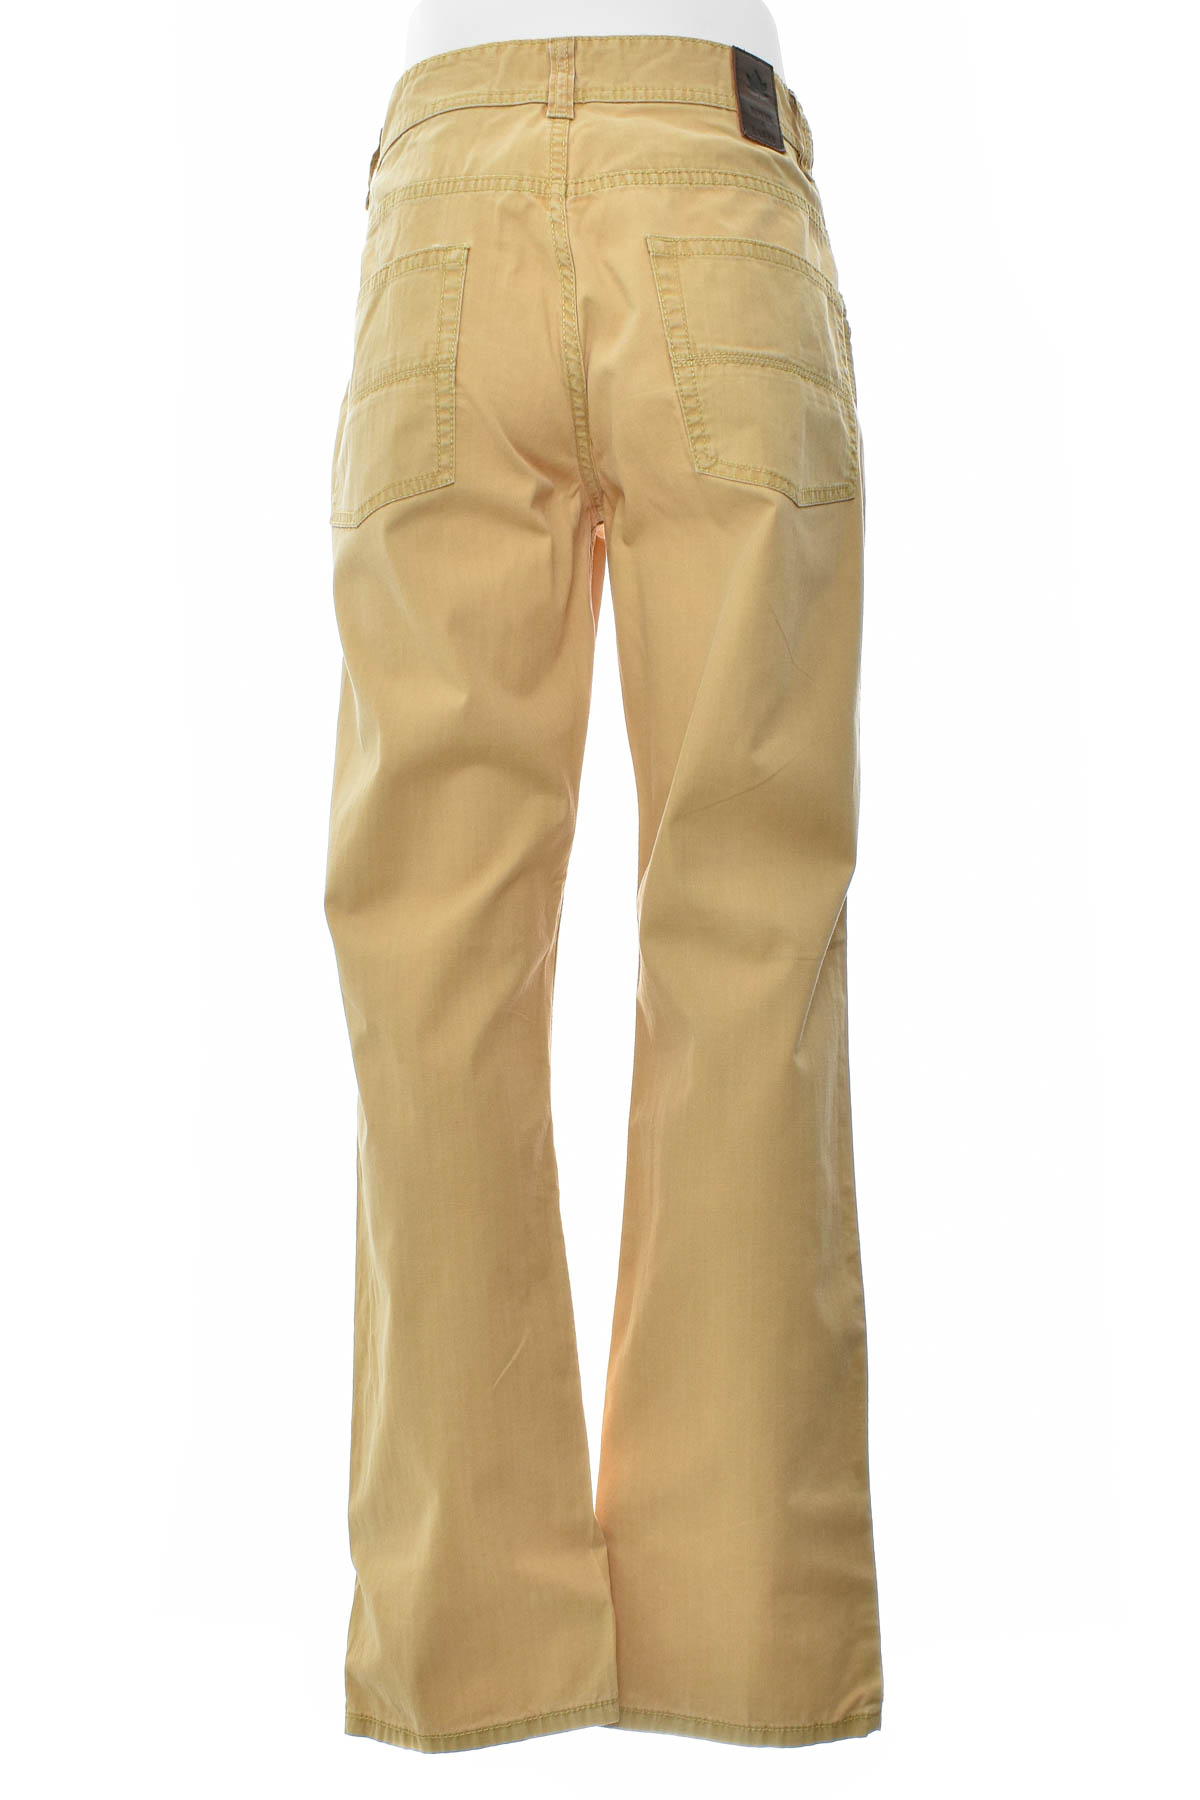 Pantalon pentru bărbați - Rover & Lakes - 1